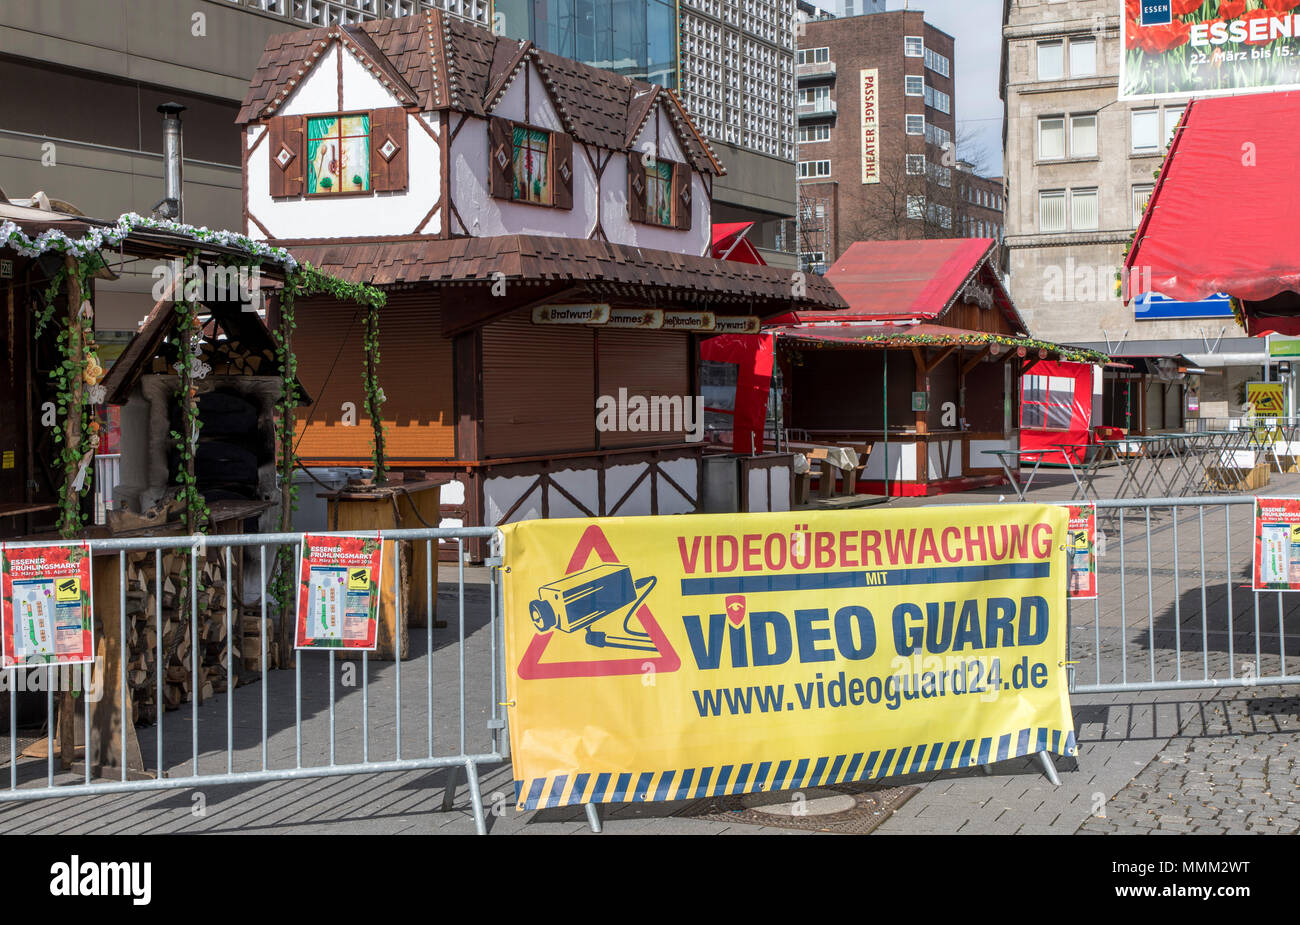 Video Guard, mobile Kameraüberwachung, für Baustellen, Lagerbereiche, Industrieanlagen, Events, wie hier eine Stadt Festival in Esse Stockfoto